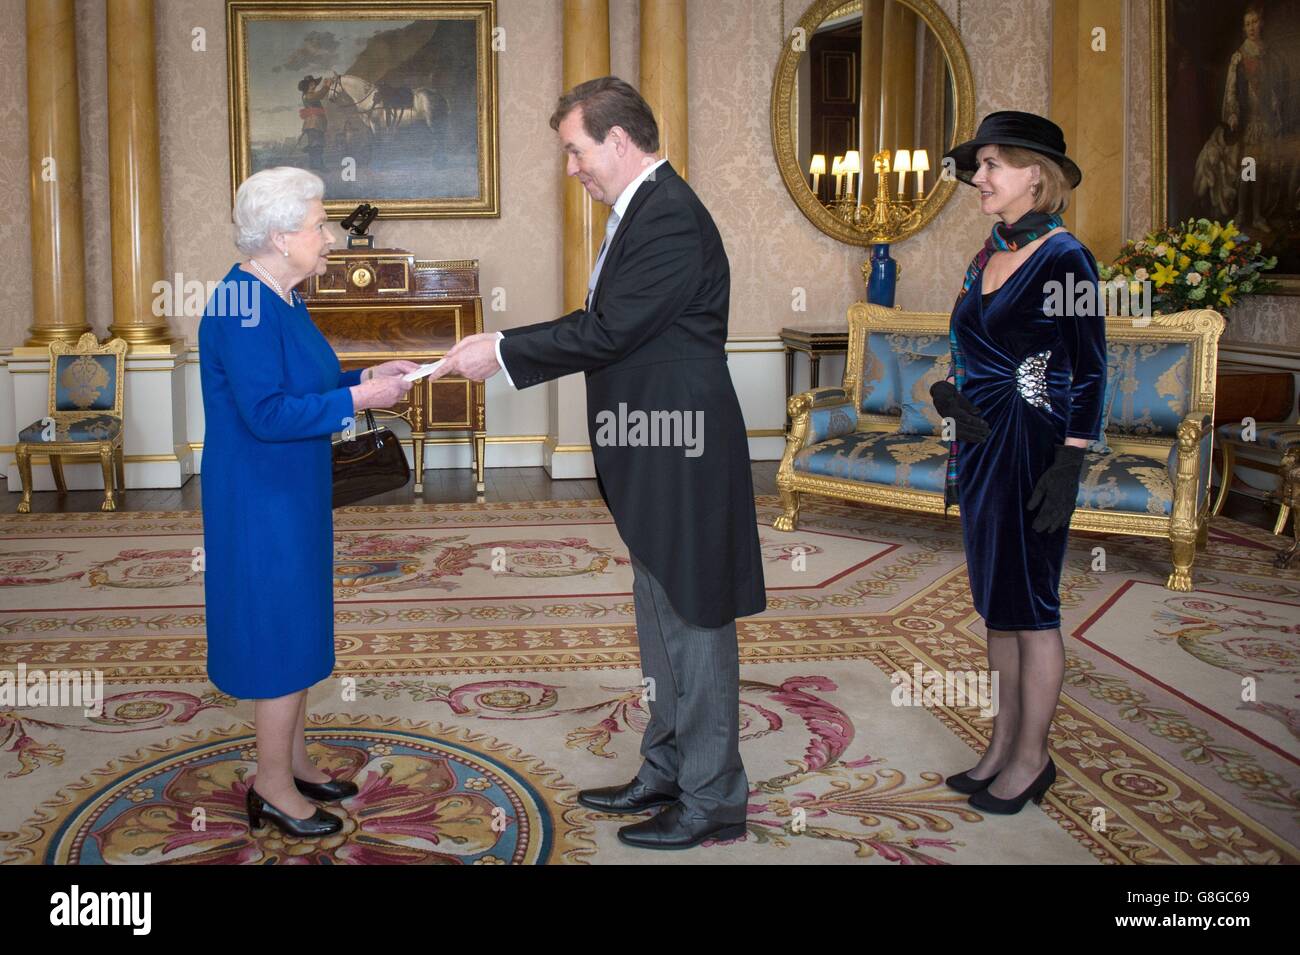 La reine Elizabeth II reçoit son Excellence M. Simon Smits, accompagné de son épouse, Mme Astrid Smits-Kleinen, où il présente ses lettres de créance en tant qu'ambassadeur du Royaume des pays-Bas à la Cour de St James à Buckingham Palace à Londres. Banque D'Images